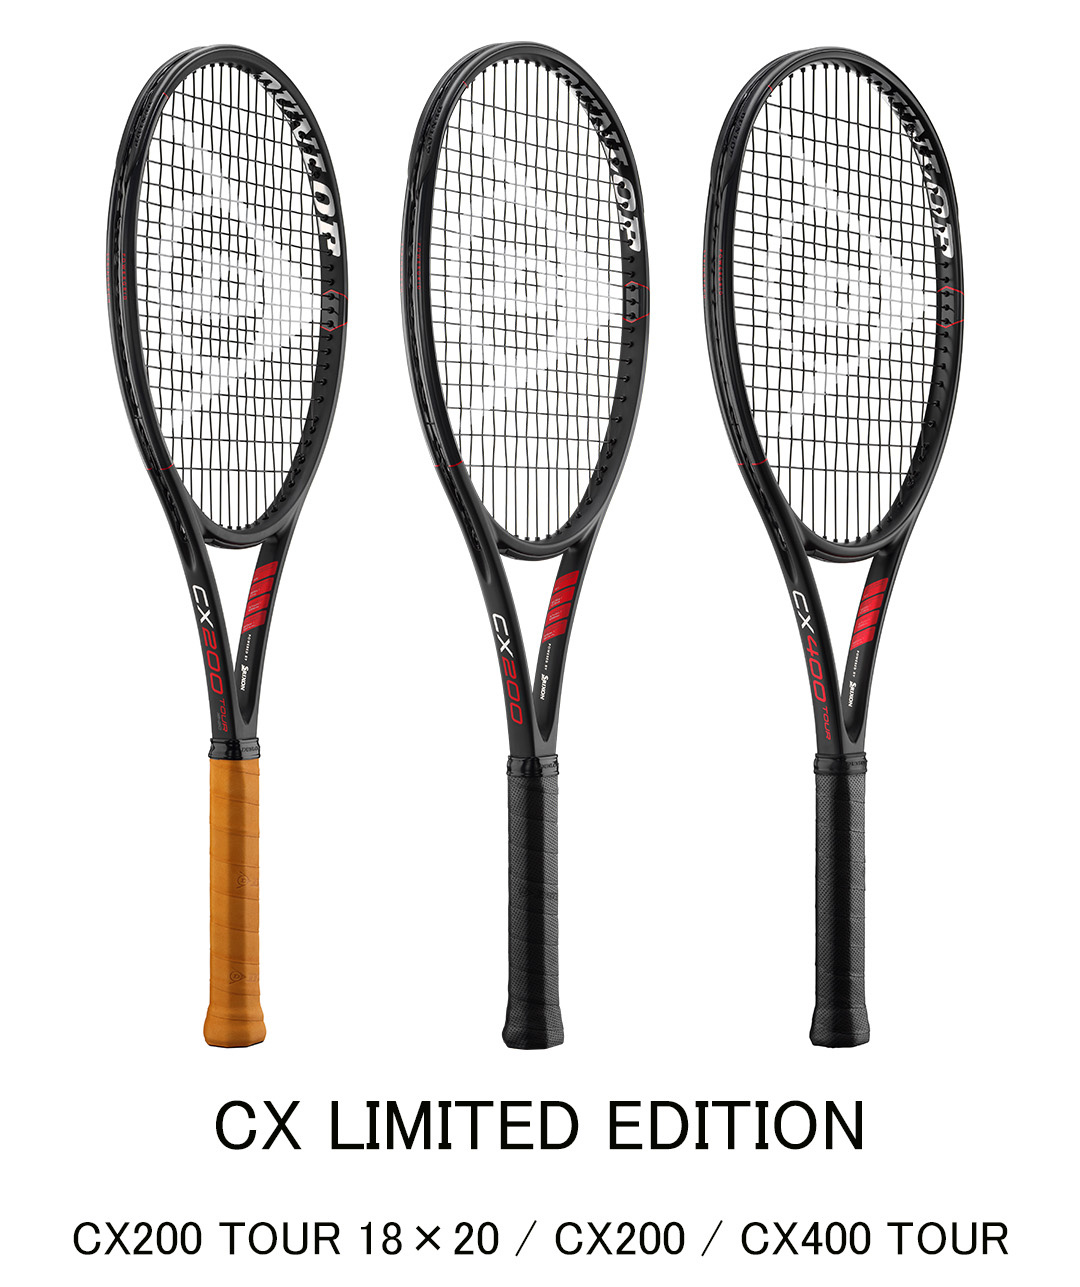 ダンロップテニスラケット「CX LIMITED EDITION」を数量限定で新 